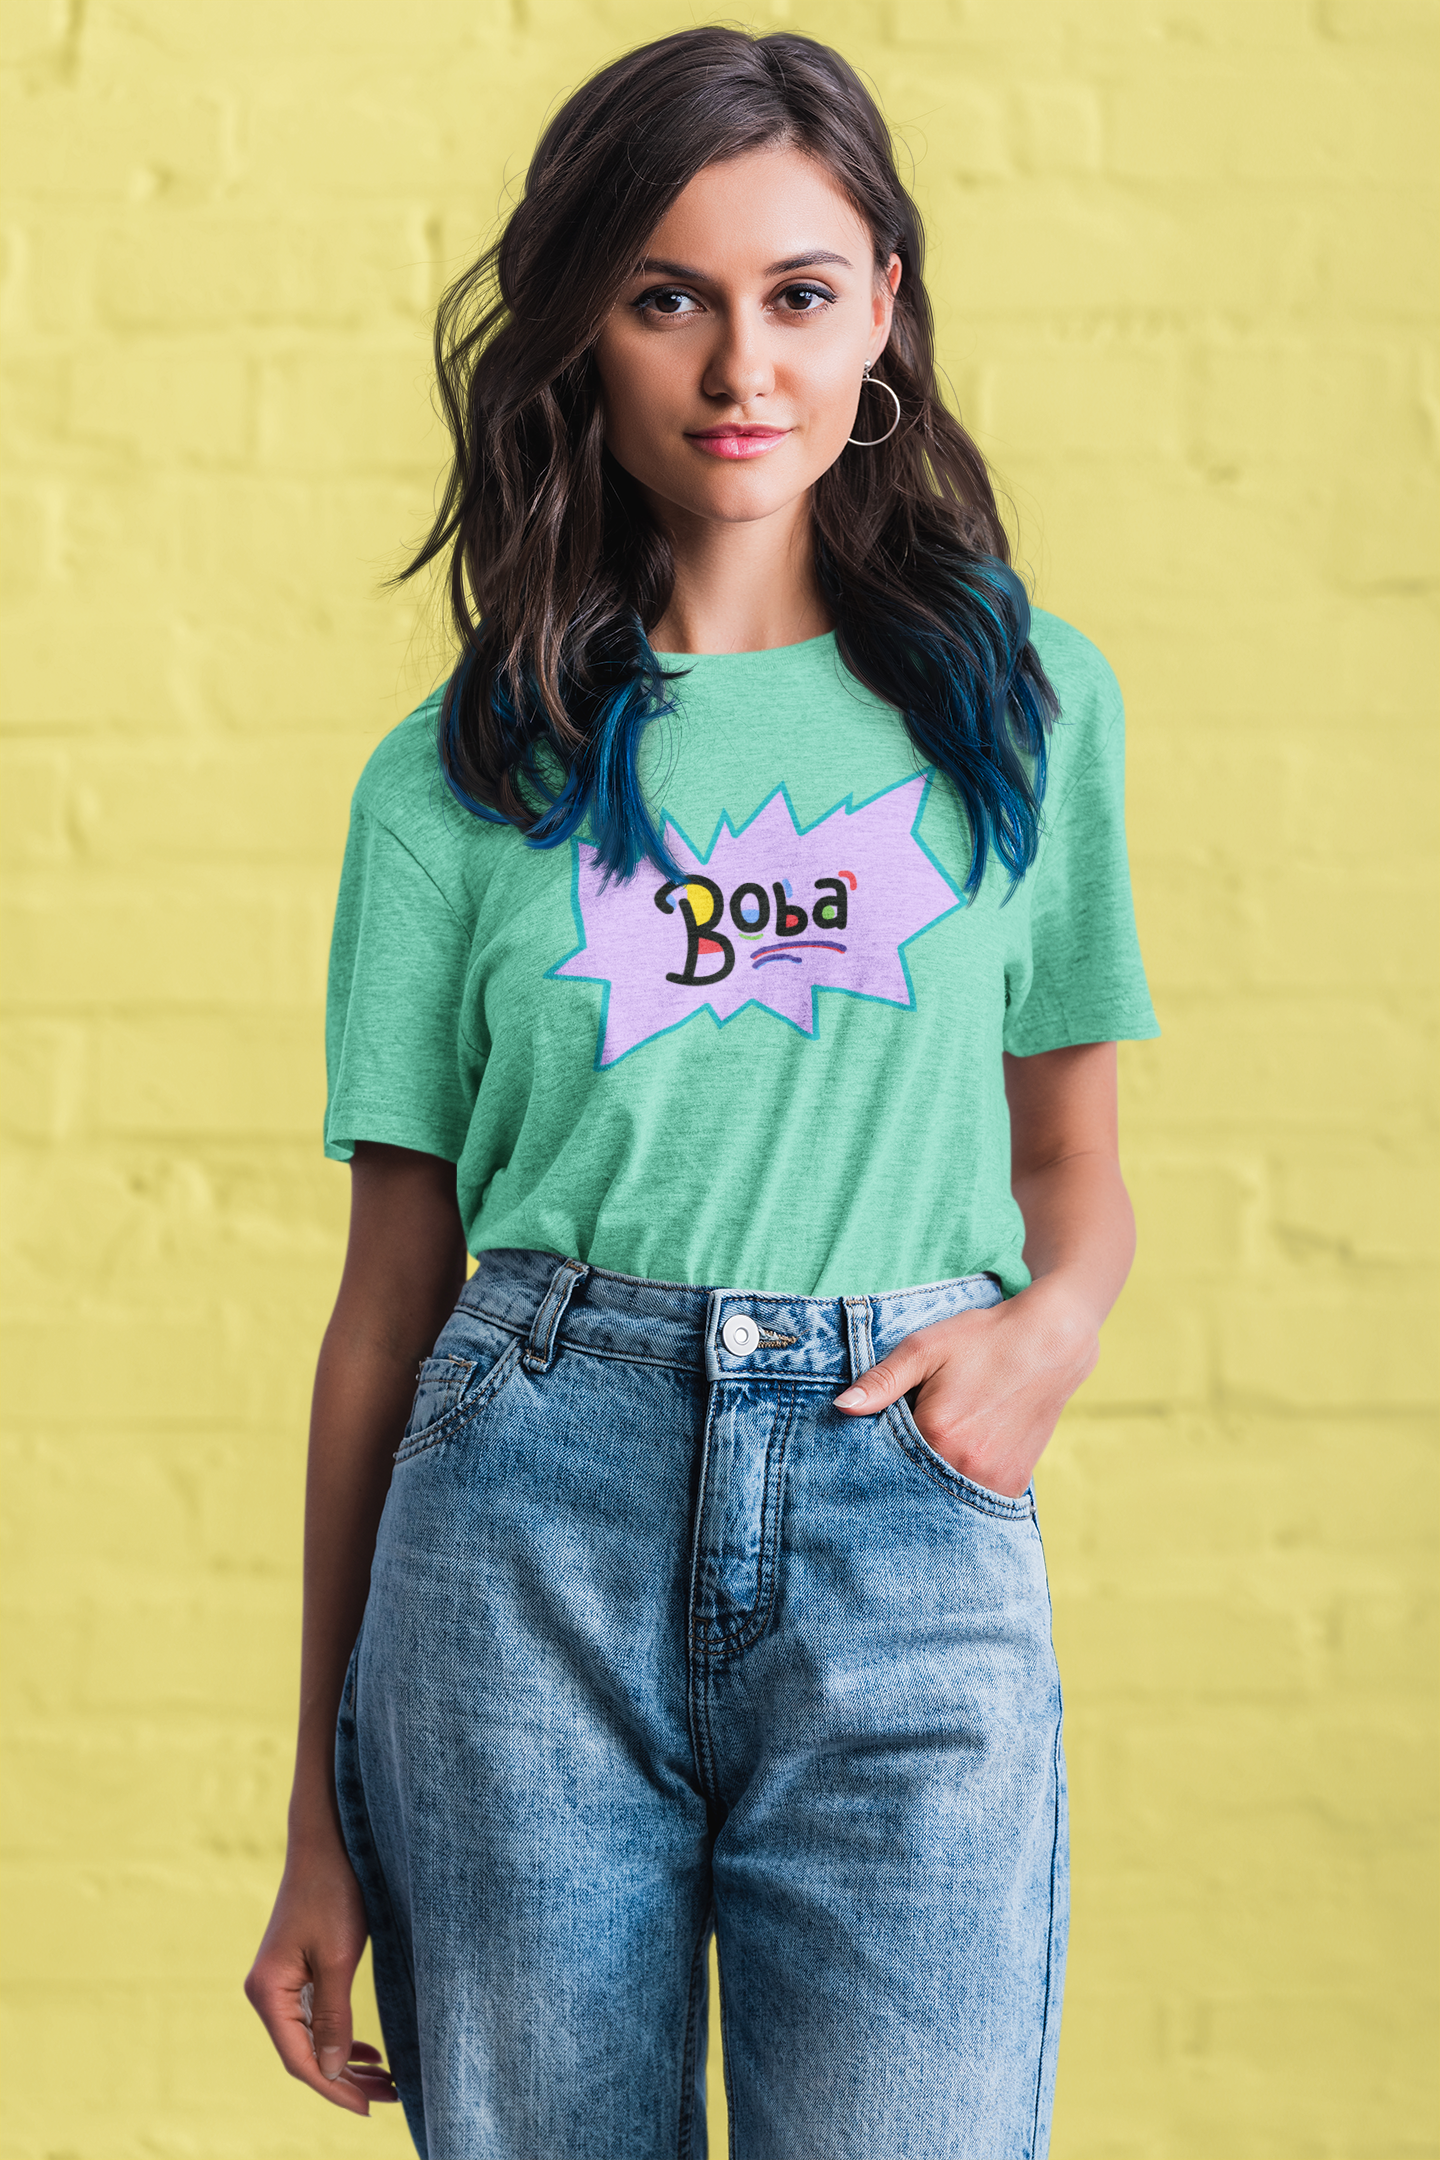 Bobarats Shirt (Unisex) - CollegeBoba